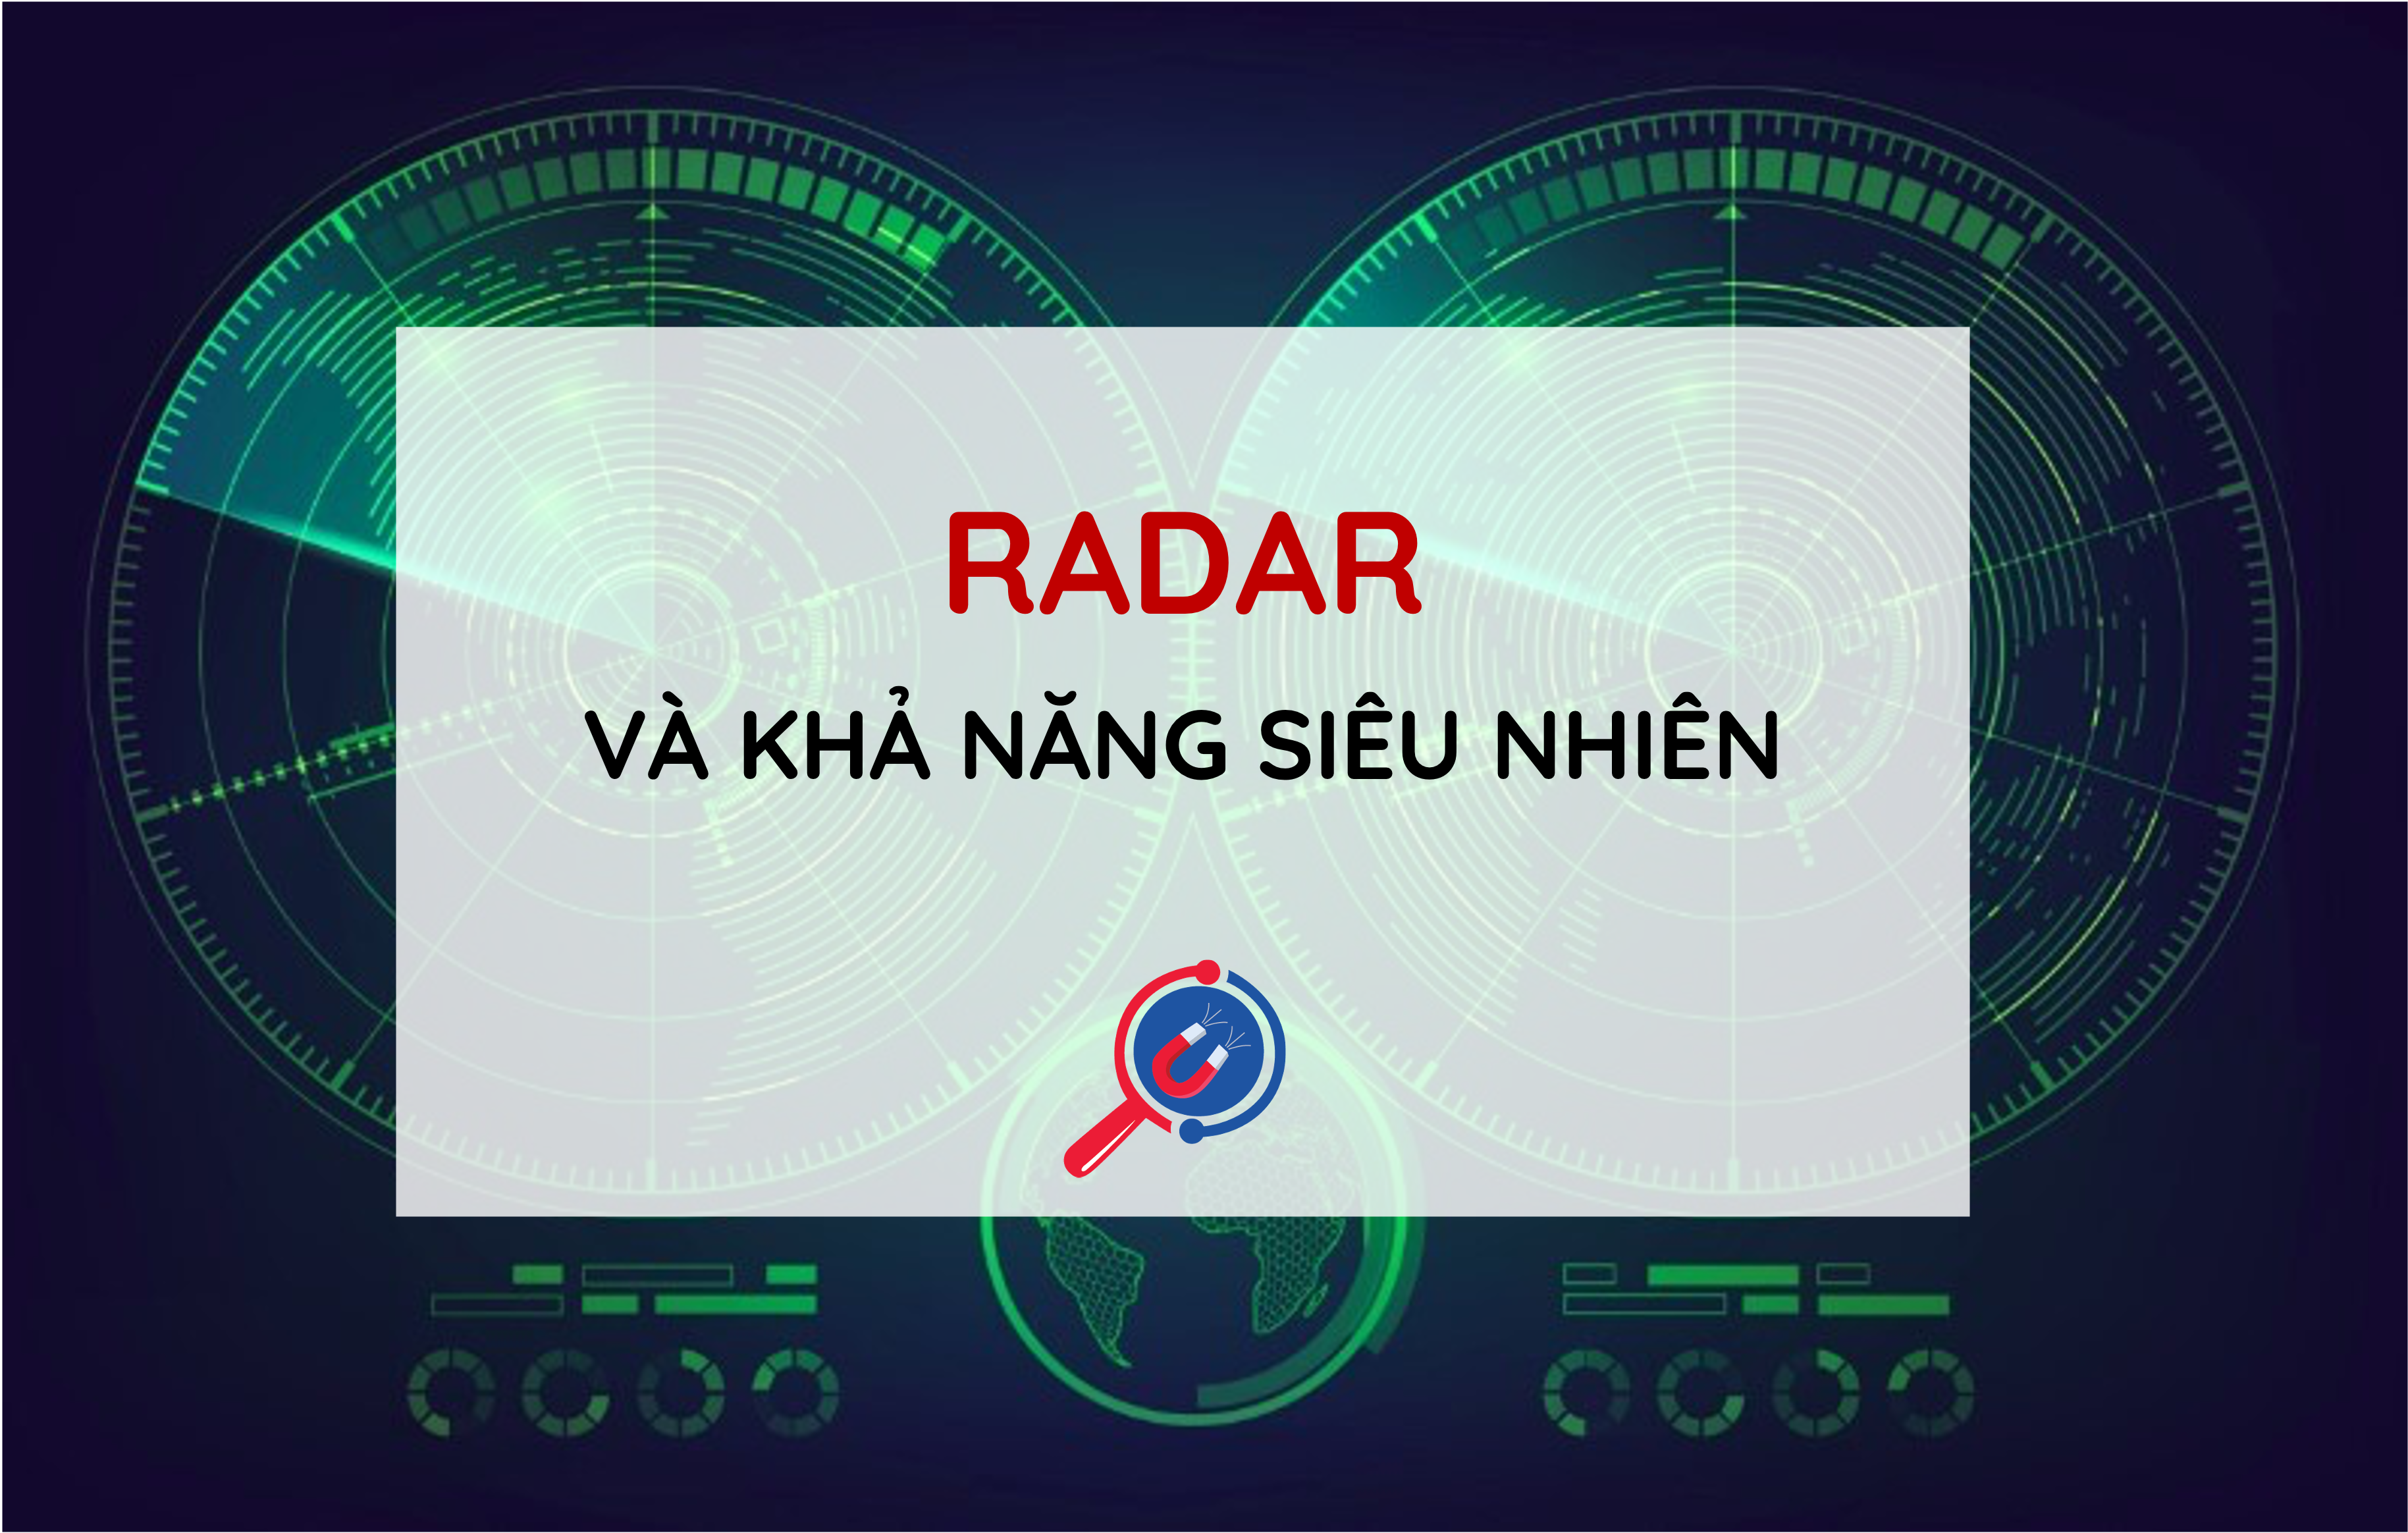 he-thong-radar-con-mat-thu-3-voi-kha-nang-sieu-nhien-148